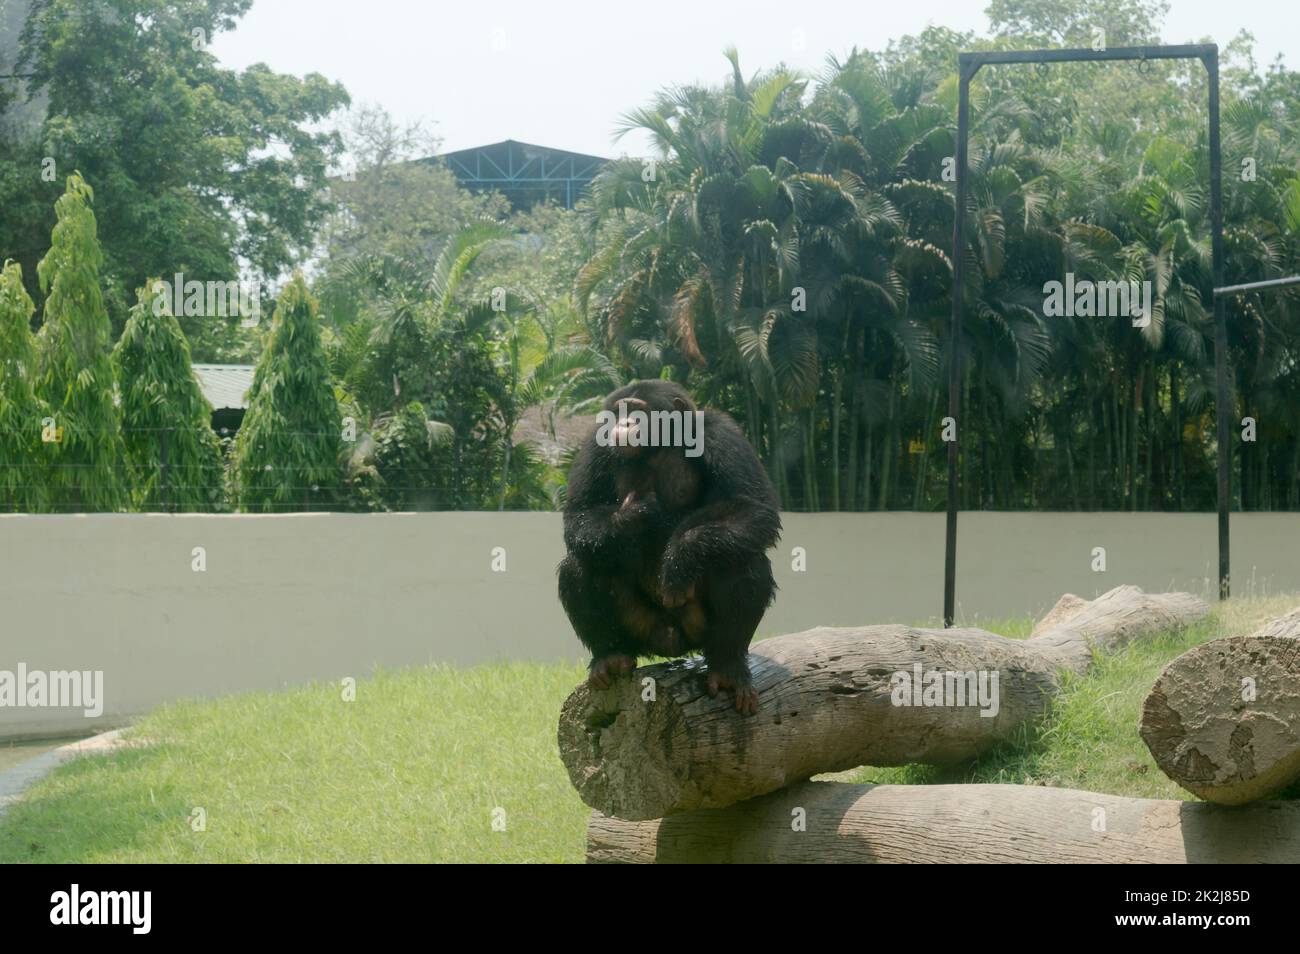 Der wilde Schimpanse (Pan troglodytes) Babu-Schimpanse, gefährdete Arten von Großen Affen, die im Alipur Zoological Garden, Kolkata, Westbengalen, Indien-Südasien auf einem Baumstamm sitzen Stockfoto